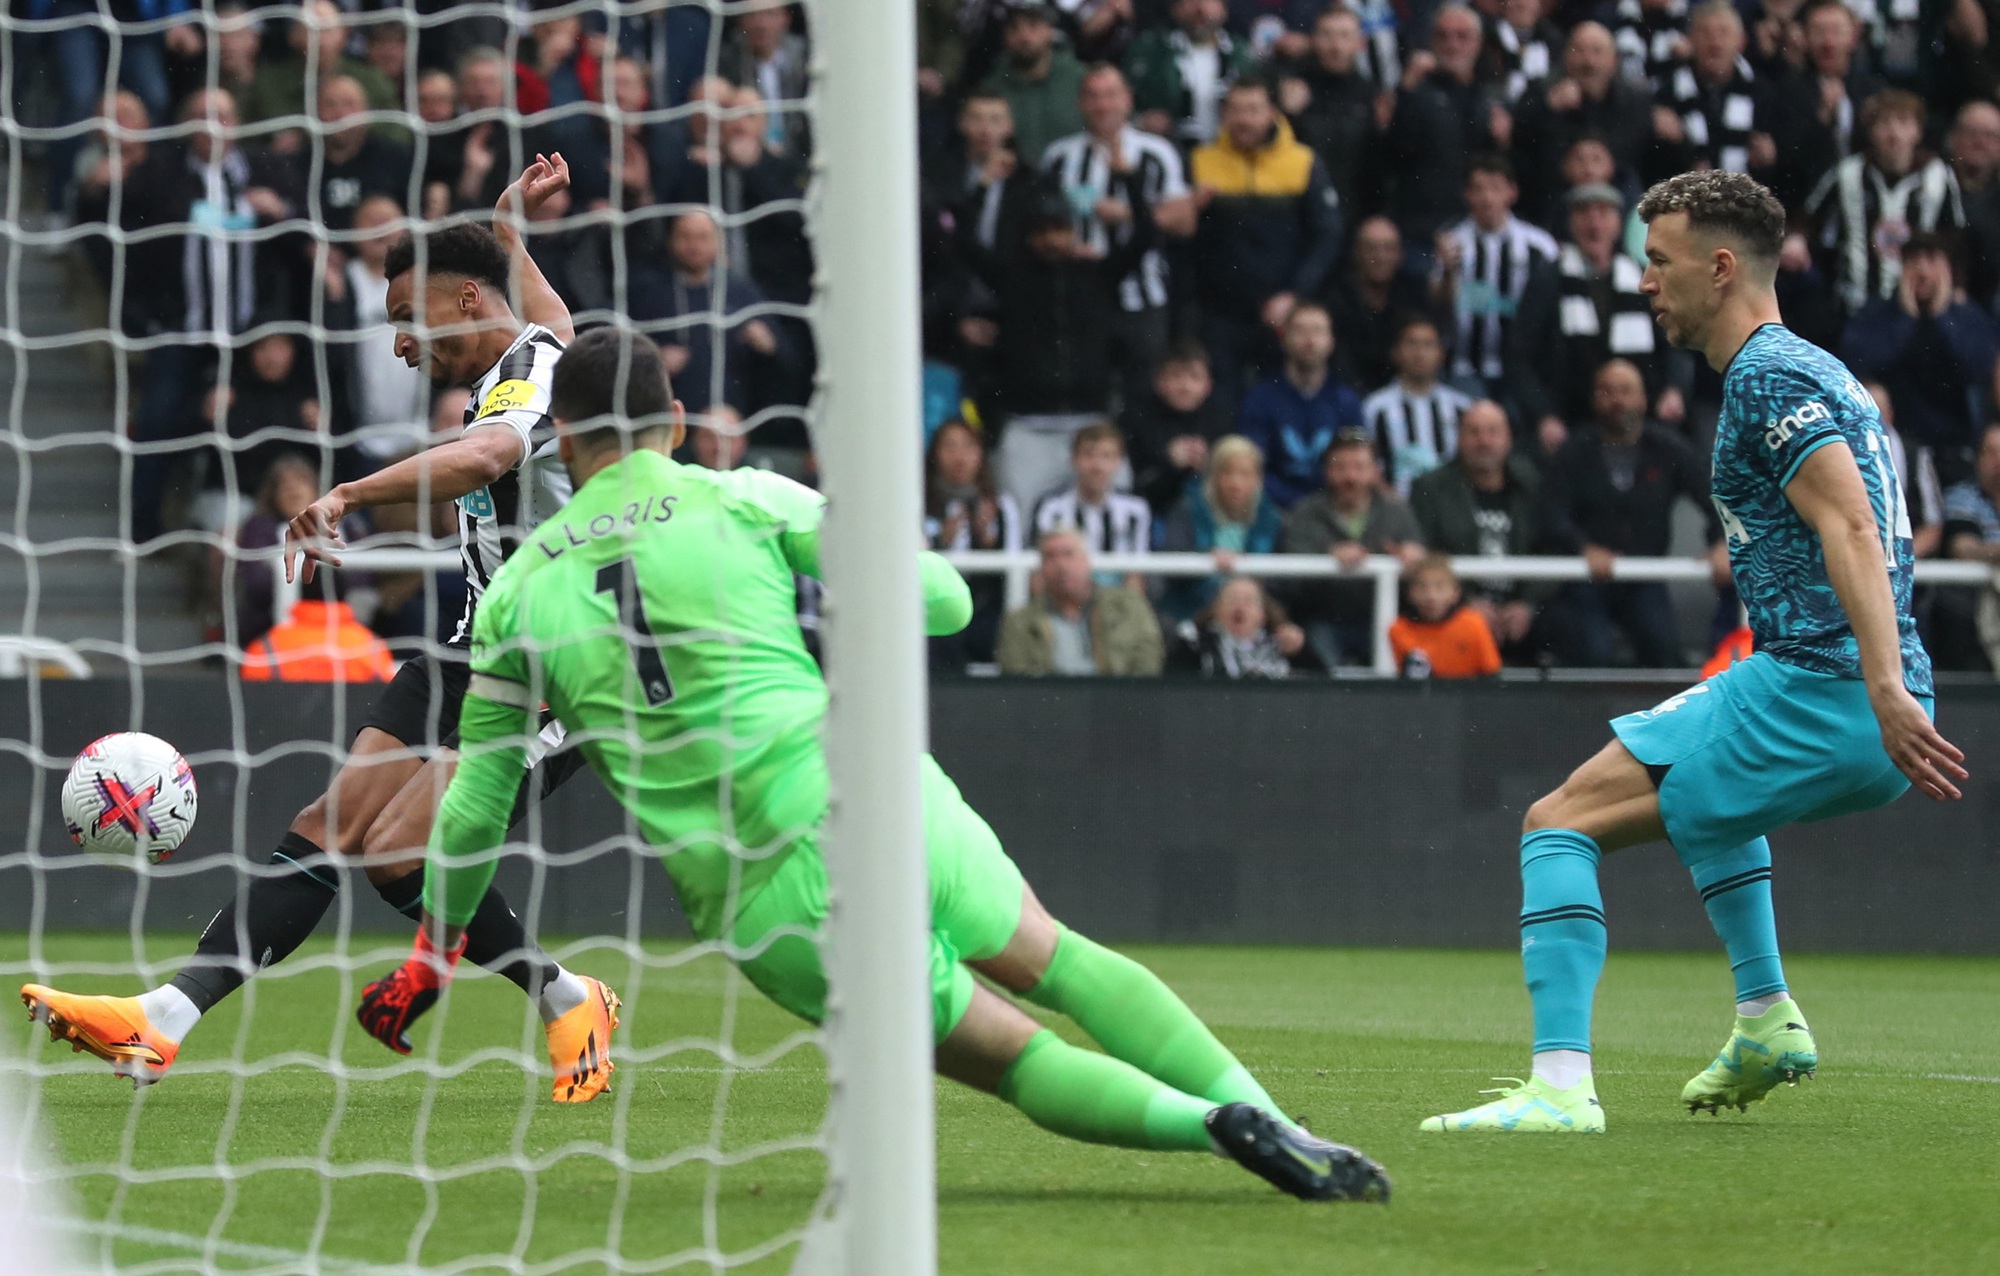 Thủng lưới 5 bàn trong 21 phút, Tottenham đại bại trước Newcastle - Ảnh 1.